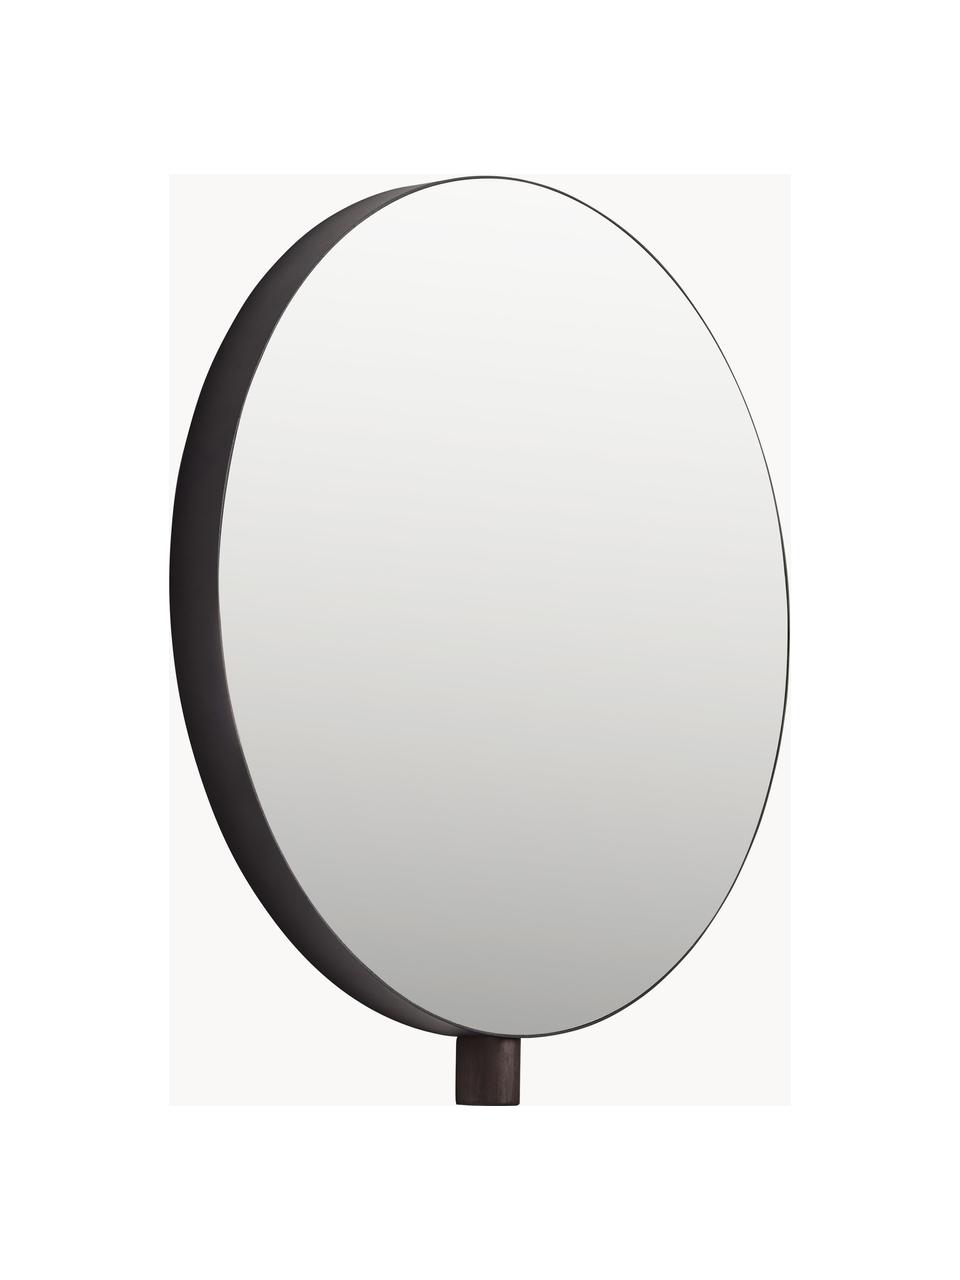 Runder Wandspiegel Kollage, Spiegelfläche: Spiegelglas, Rahmen: Stahl, beschichtet, Schwarz, Ø 50 cm